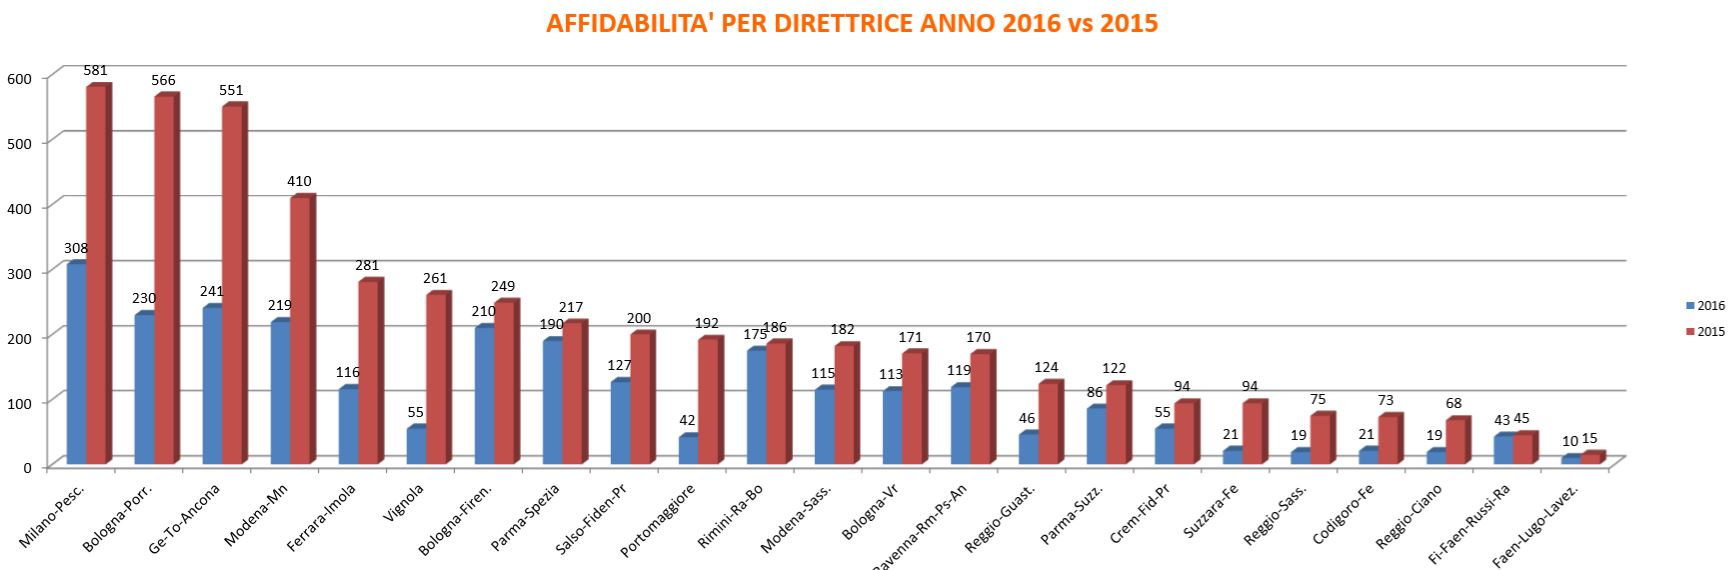 Affidabilità (numero di treni soppressi) per direttrice ferroviaria della Regione Emilia Romagna, confrontando i dati del 2015 contro i dati del 2016 raccolti fino a Settembre.